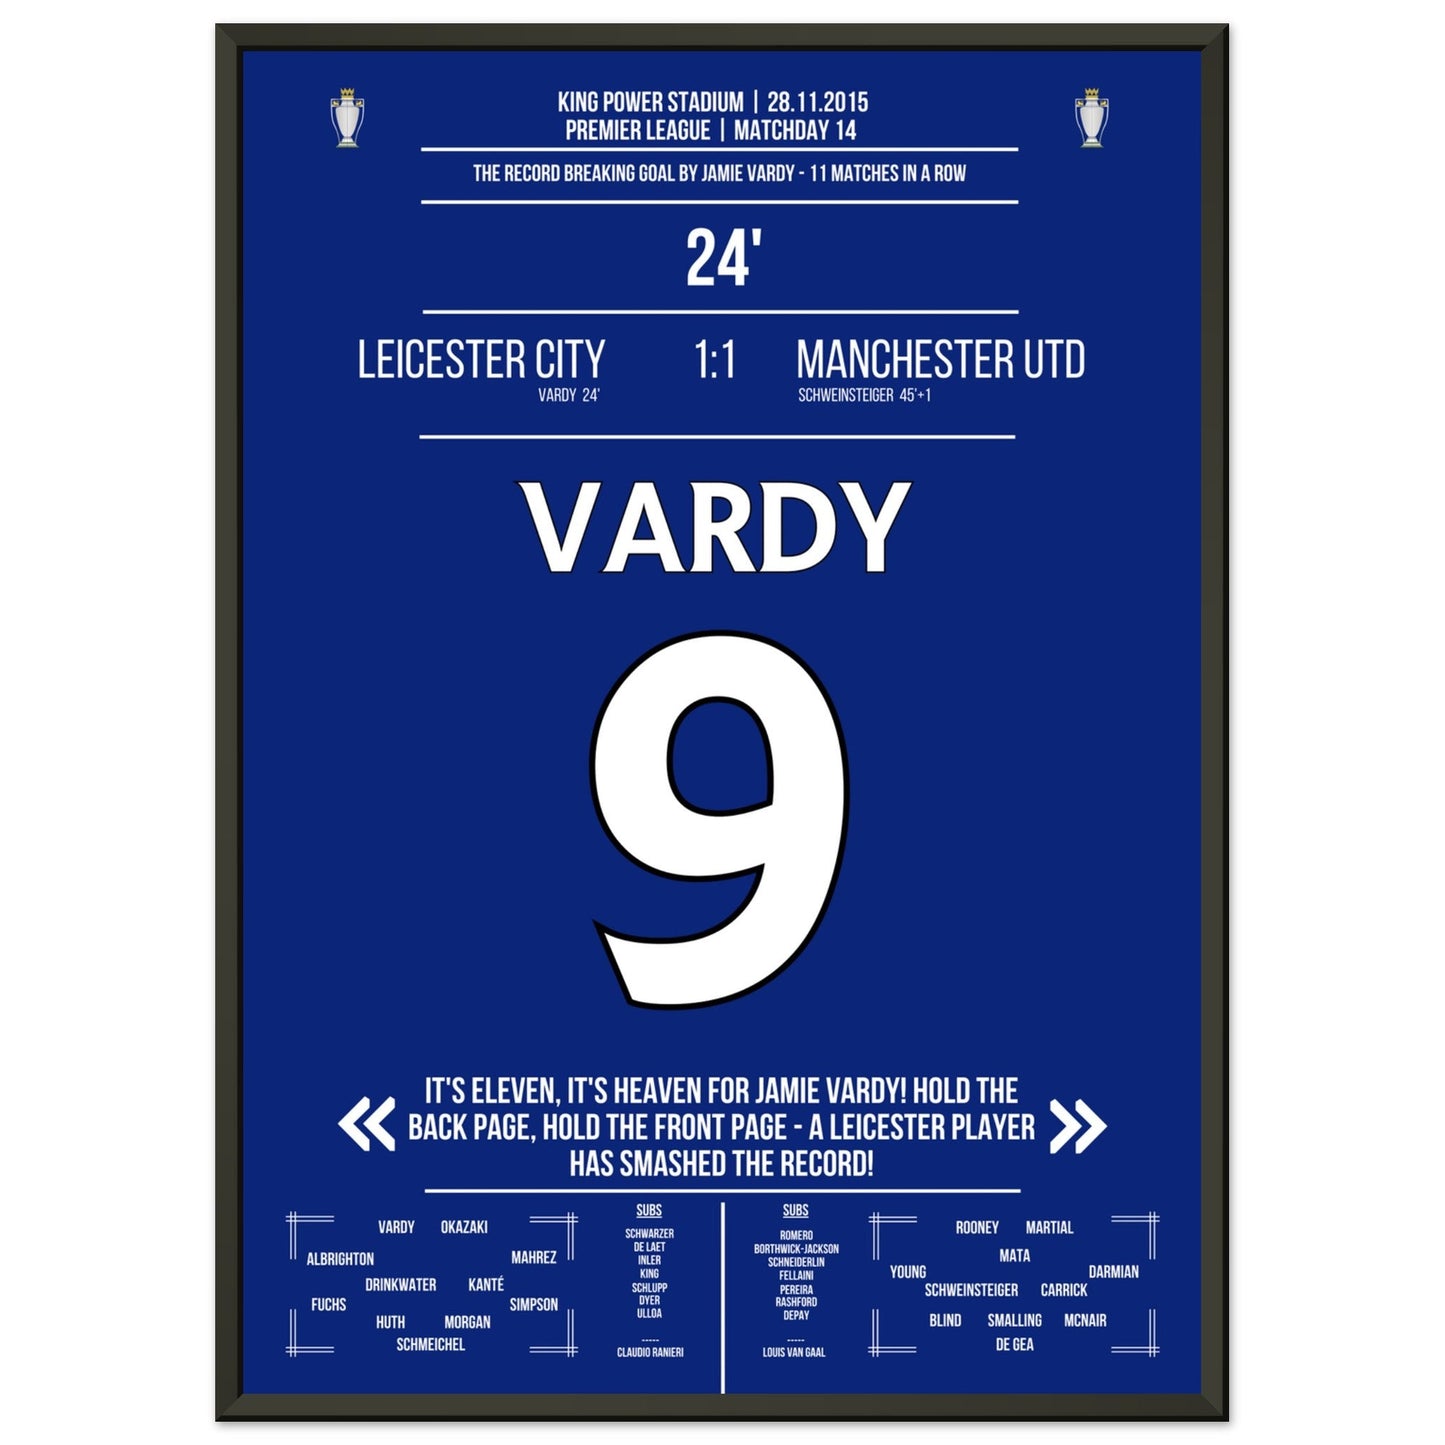 Vardy trifft im 11. Spiel in Folge und bricht den Premier League Rekord